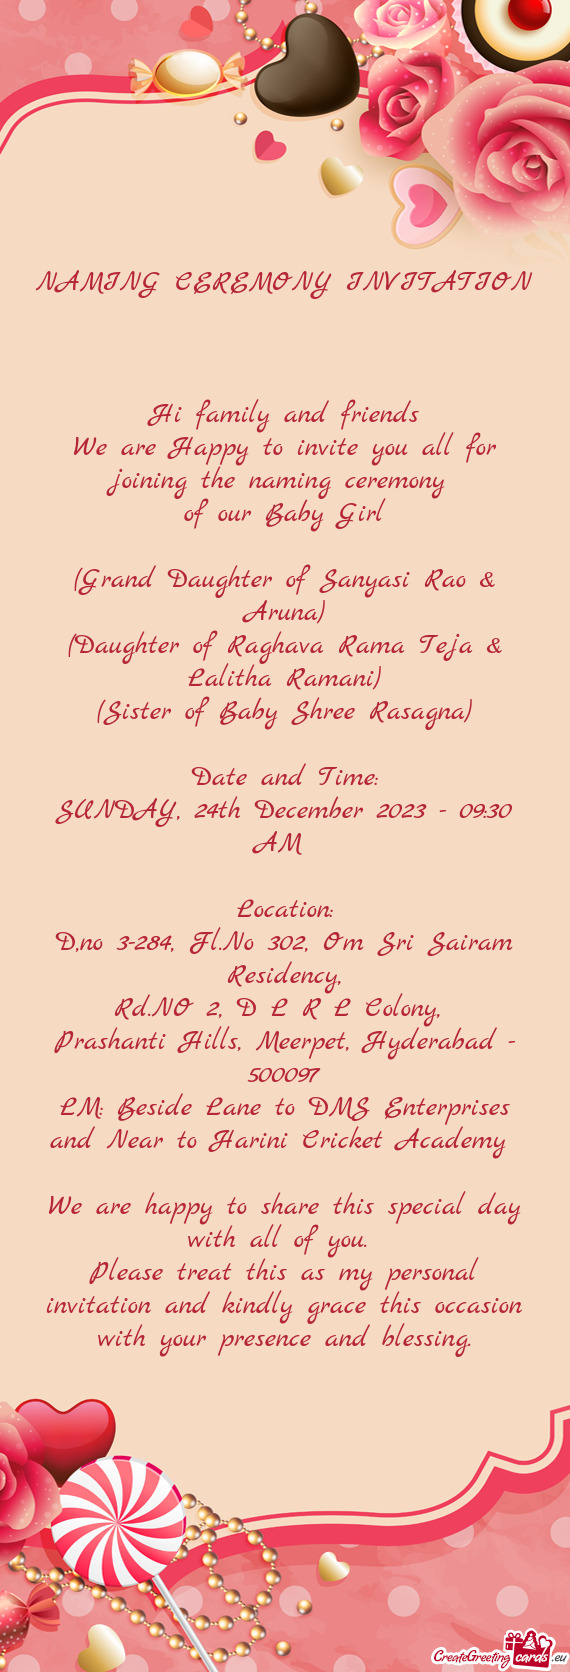 (Grand Daughter of Sanyasi Rao & Aruna)